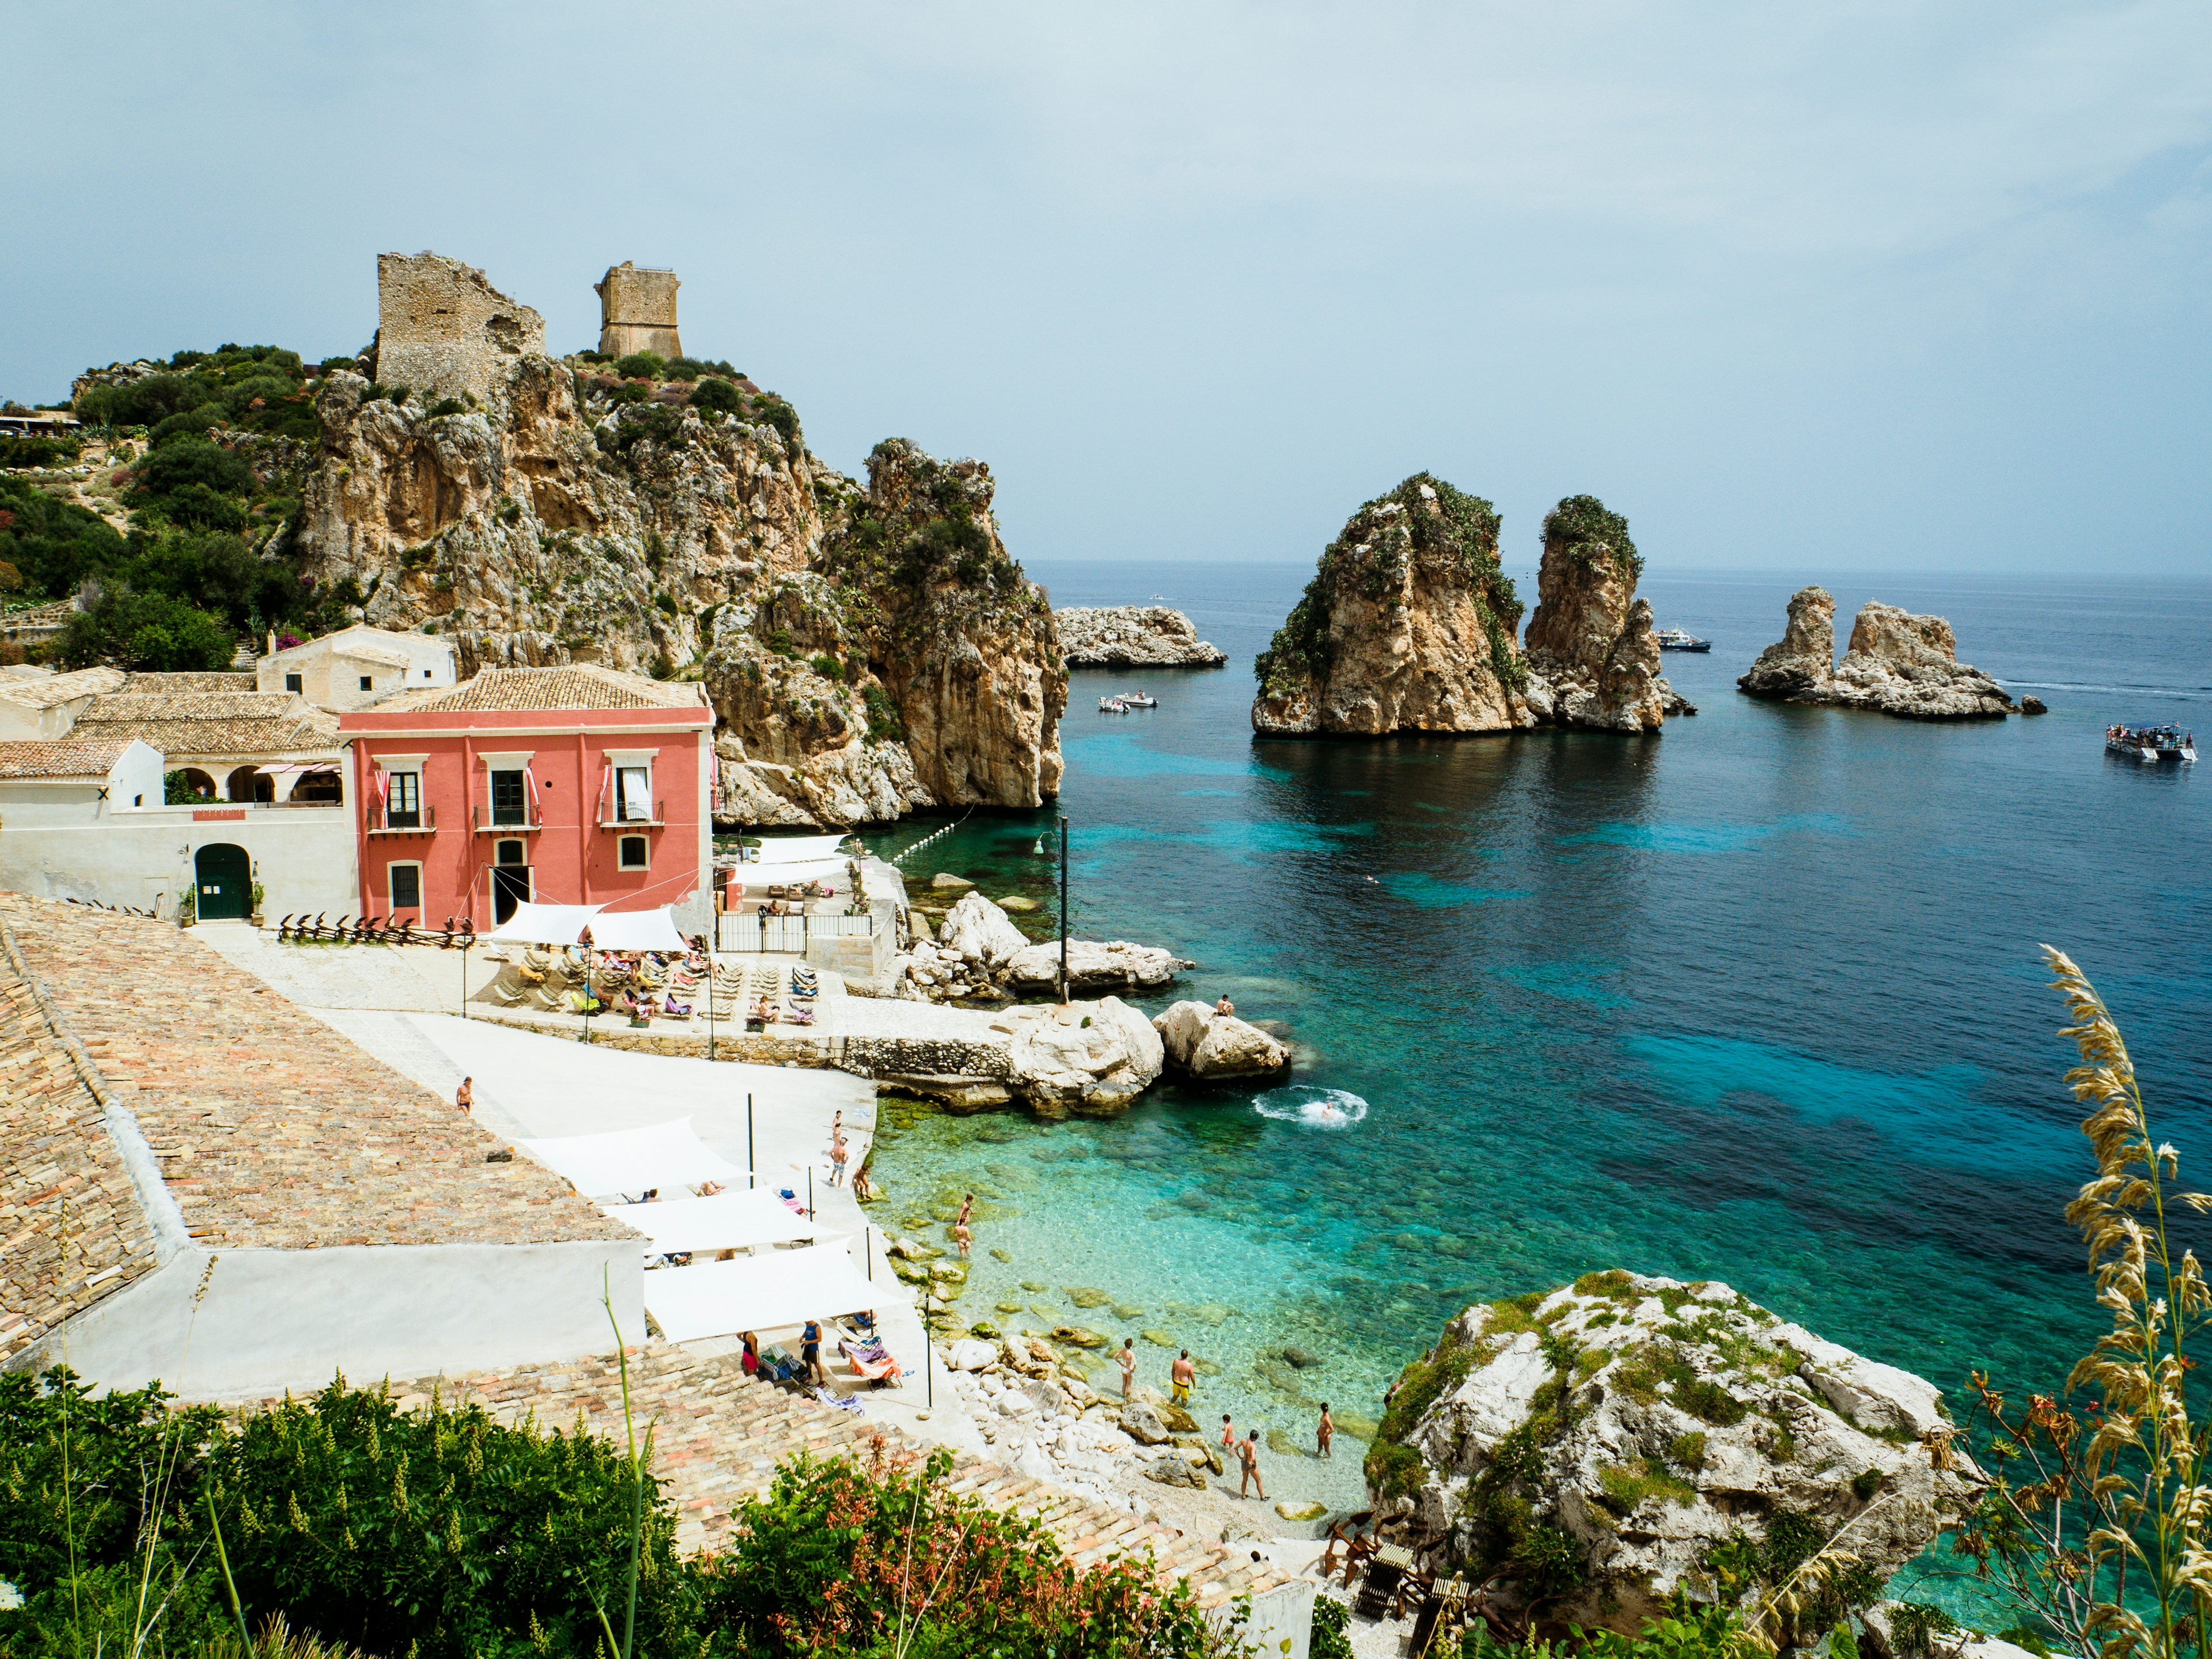 uno scorcio tipico delle isole del mediterraneo, con edifici antichi e il mare cristallino